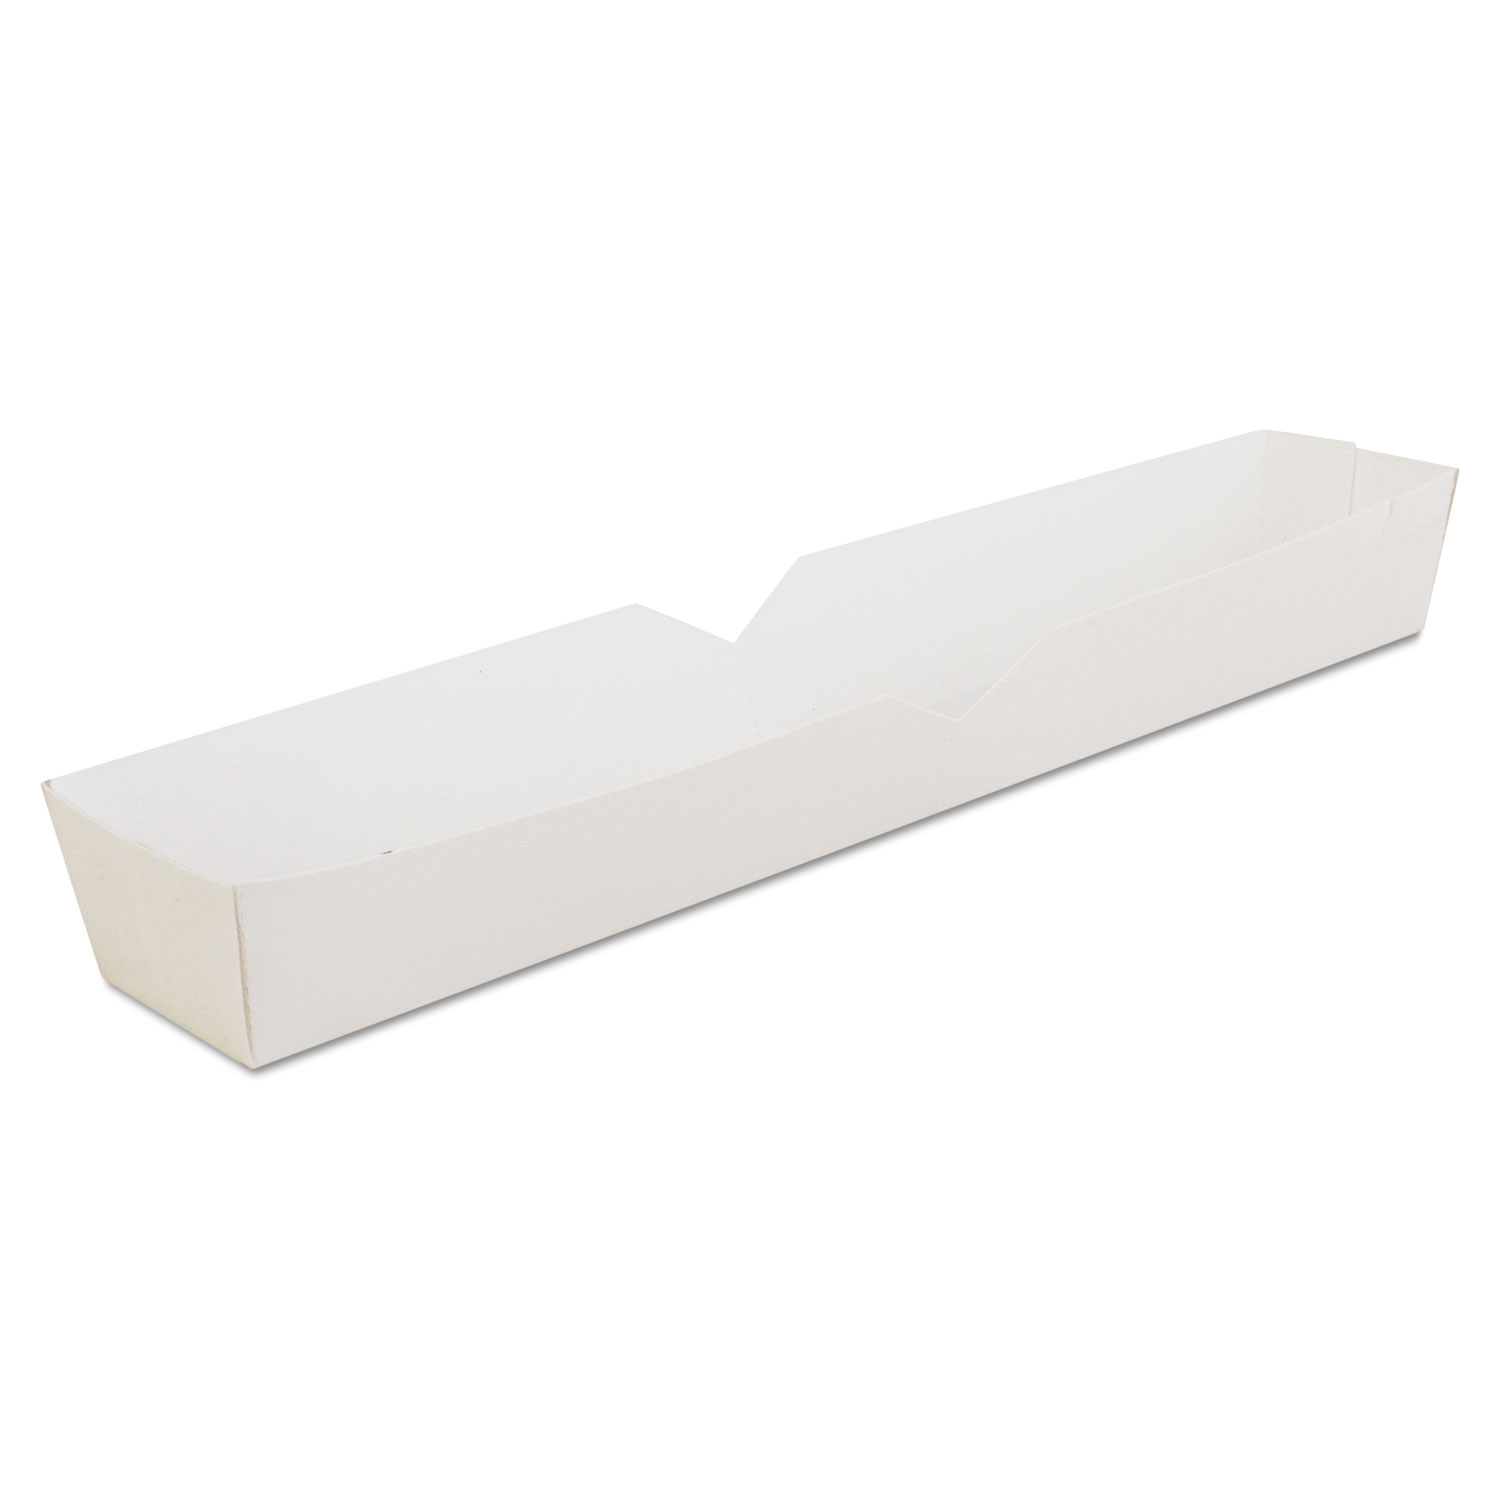  SCT SCH 0711 Hot Dog Tray, White, 10 1/4 x 1 1/2 x 1 1/4, Paperboard, 500/Carton (SCH0711) 